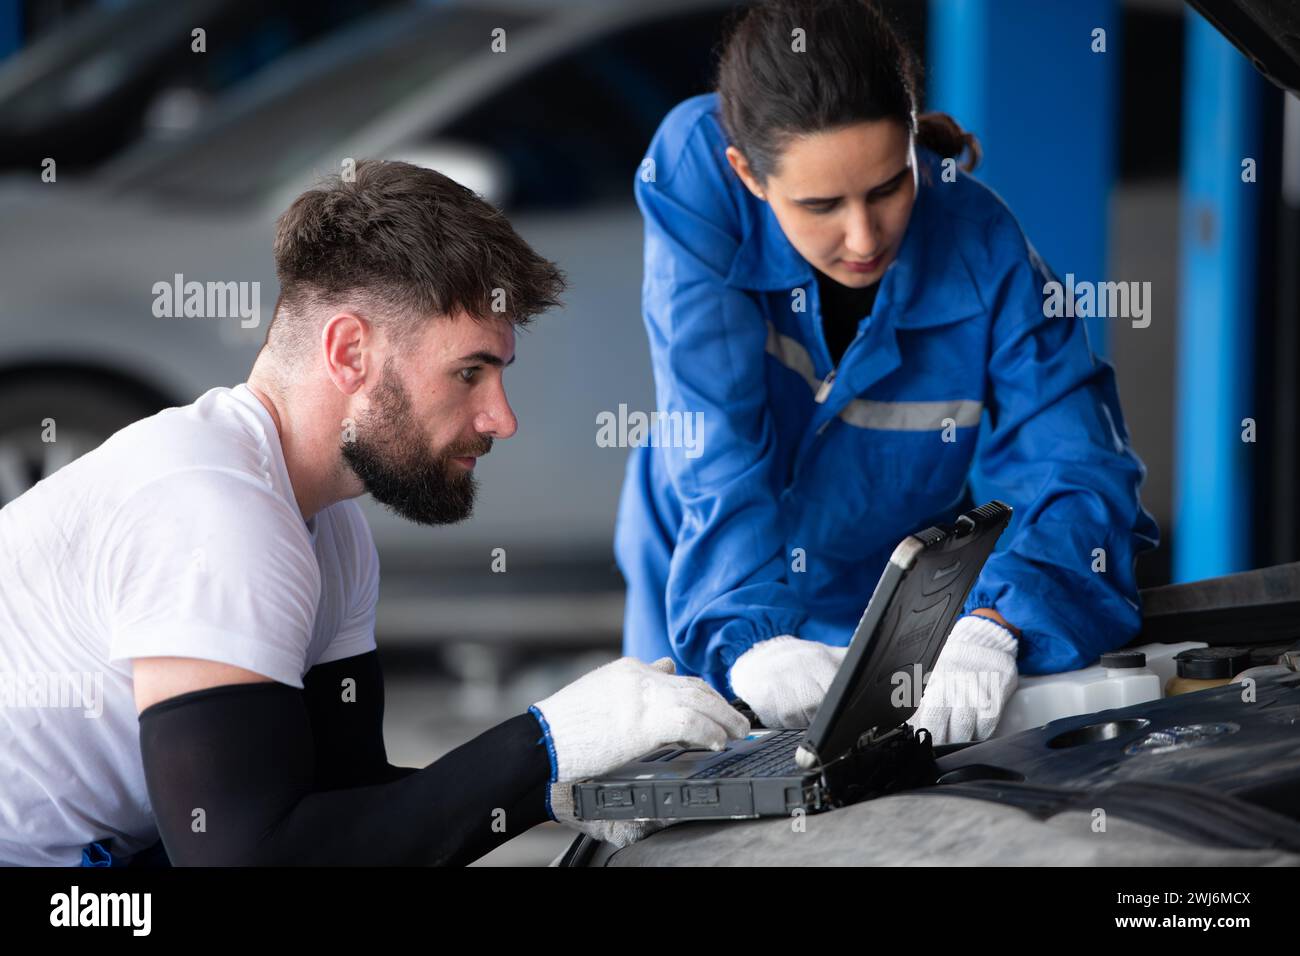 Professioneller Automechaniker, Mann und Frau, die zusammen in einer Autowerkstatt arbeiten. Stockfoto